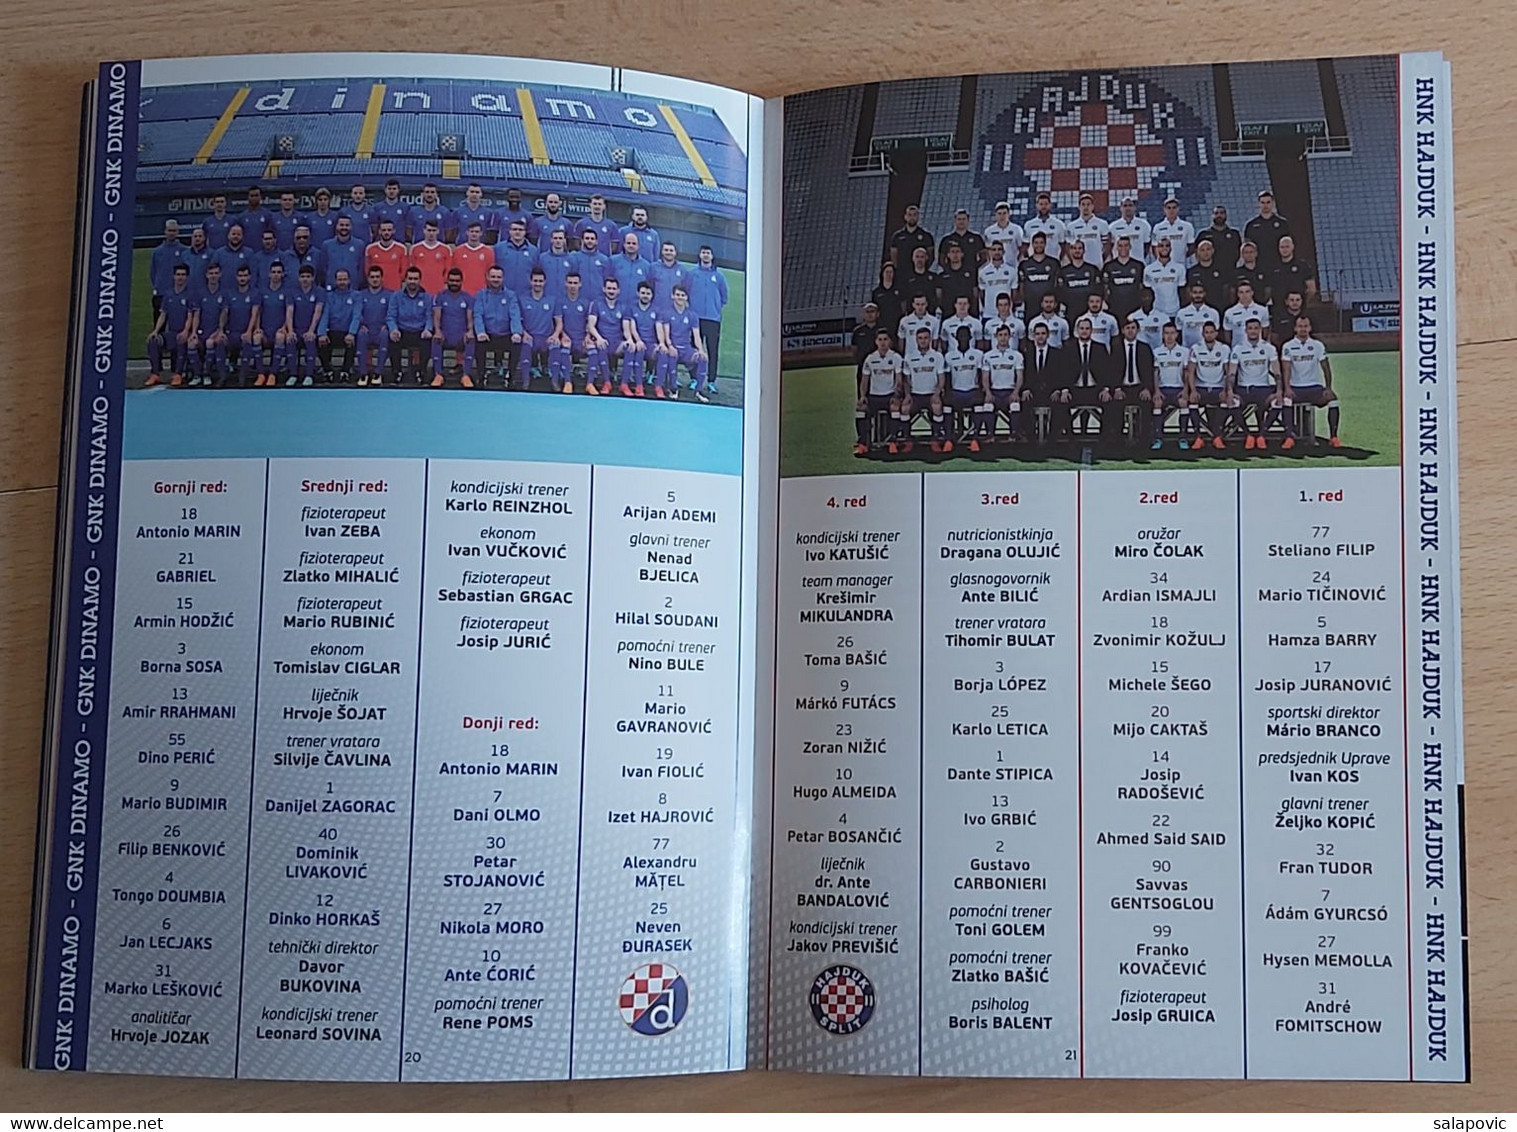 GNK DINAMO ZAGREB - HNK HAJDUK SPLIT 2018 finals of the Croatian Football Cup FOOTBALL CROATIA FOOTBALL MATCH PROGRAM